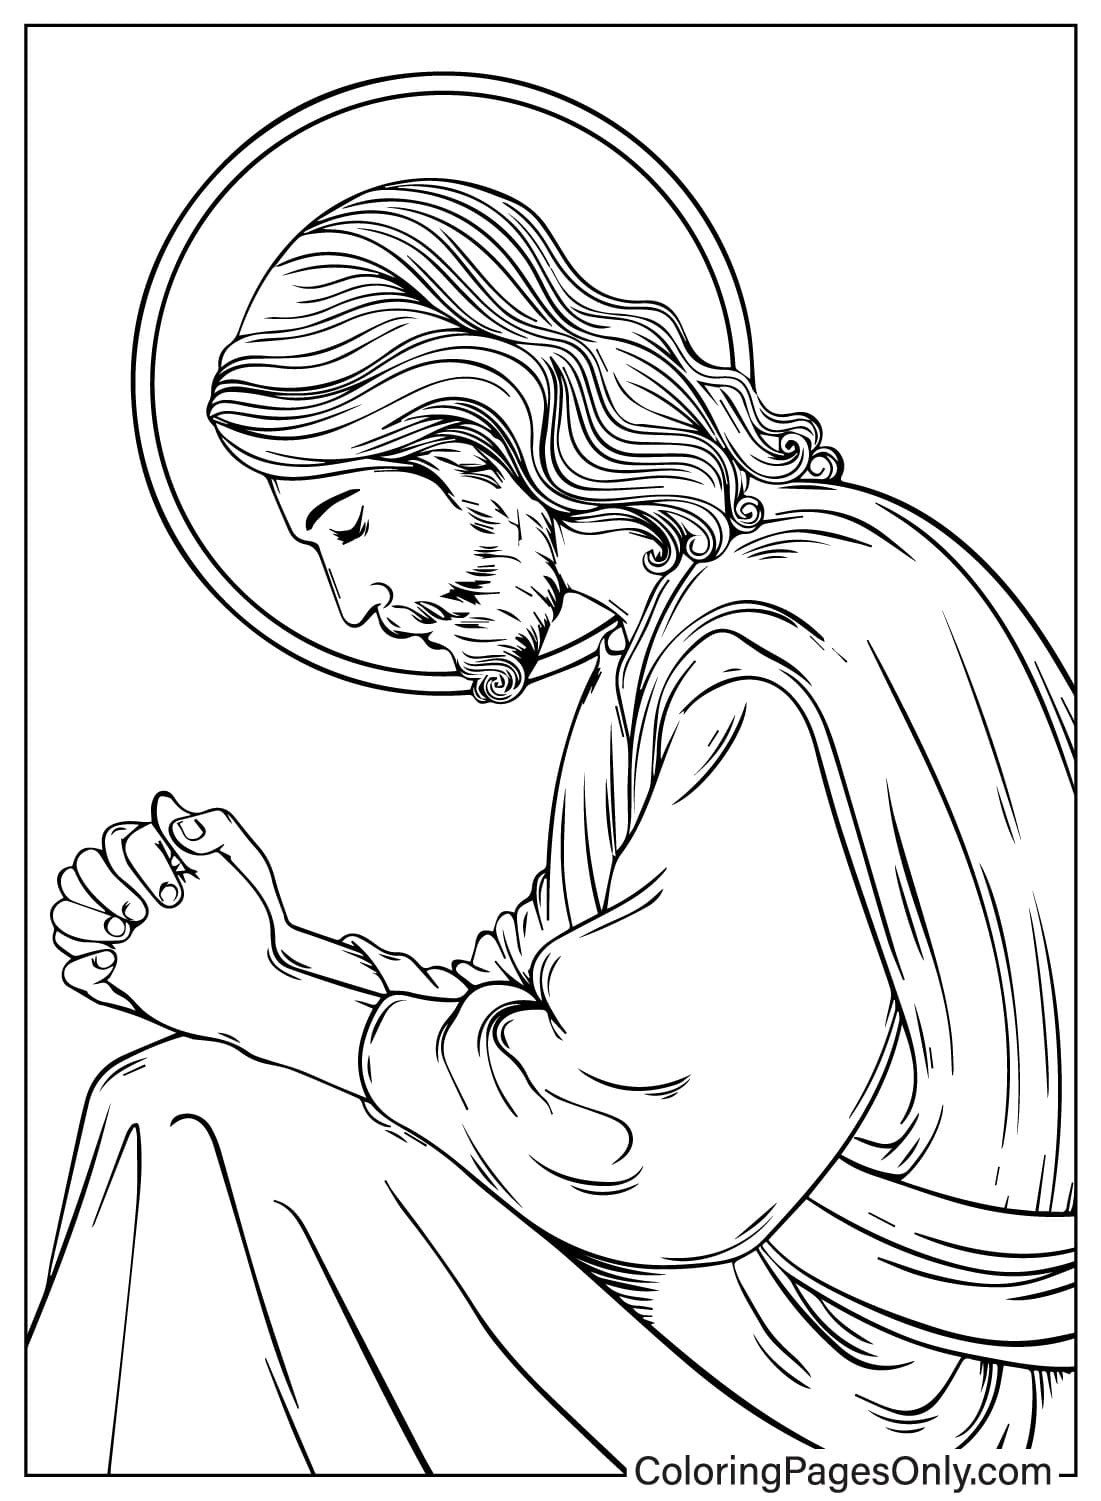 Jesus ora no dia de oração